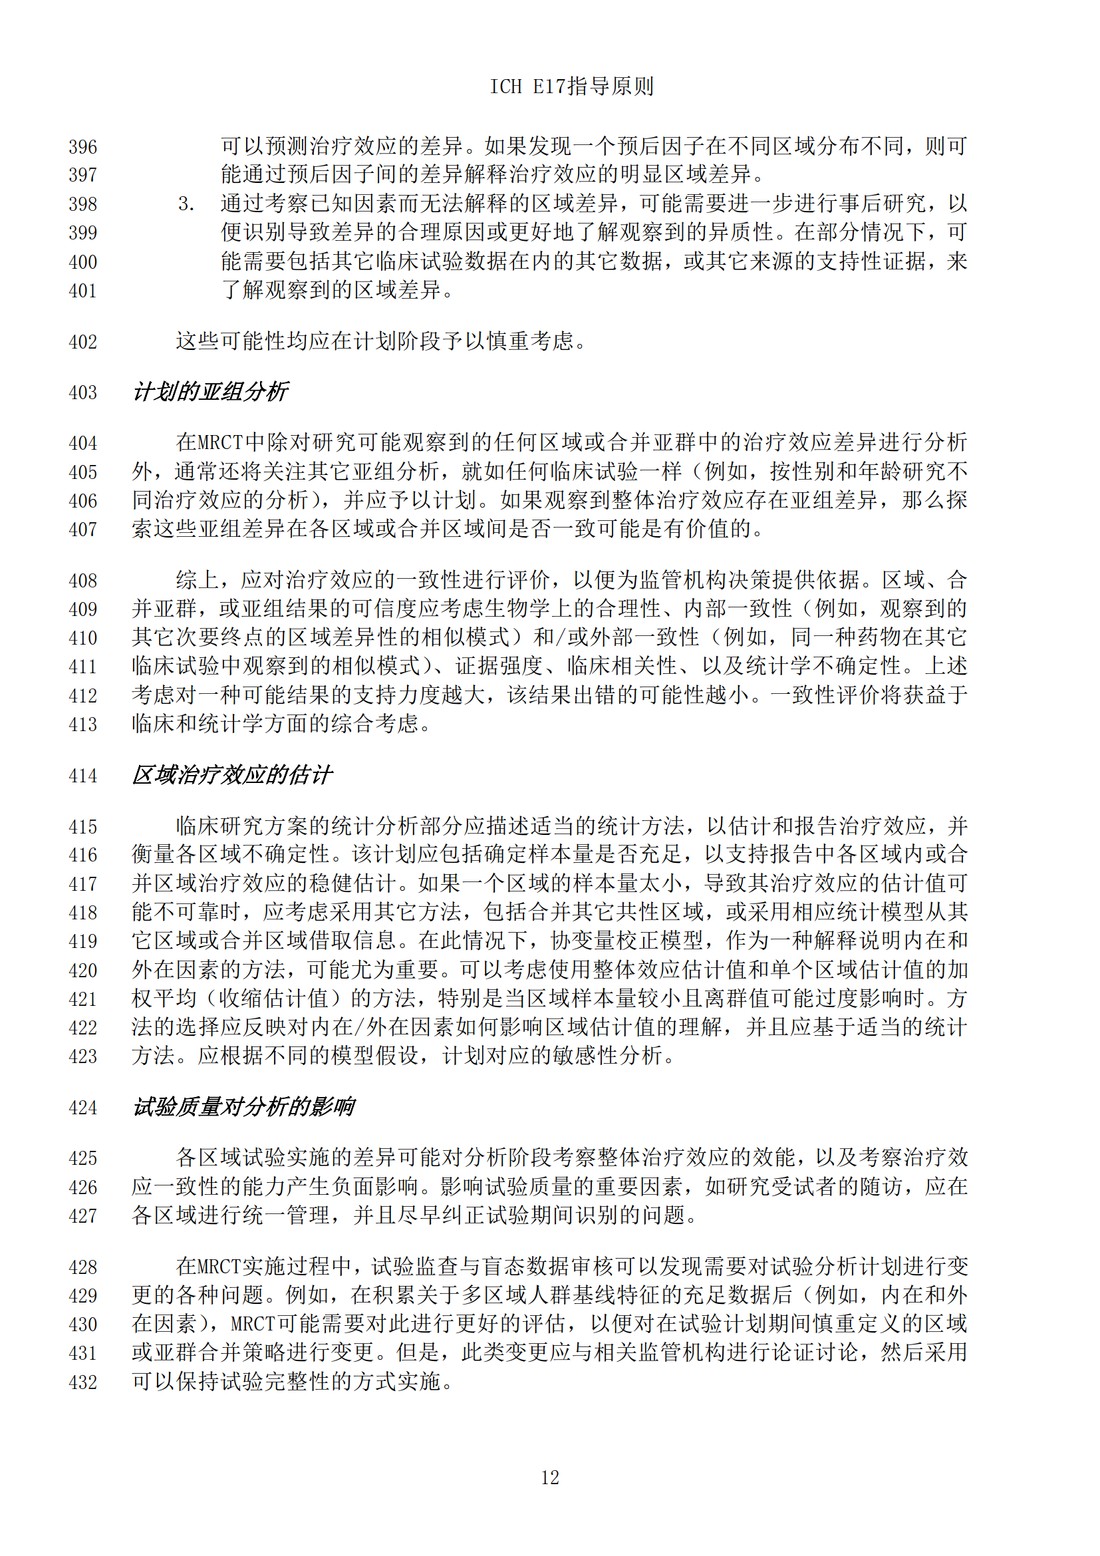 E17多区域临床试验计划与设计的一般原则（中文翻译公开征求意见稿）_15.jpg